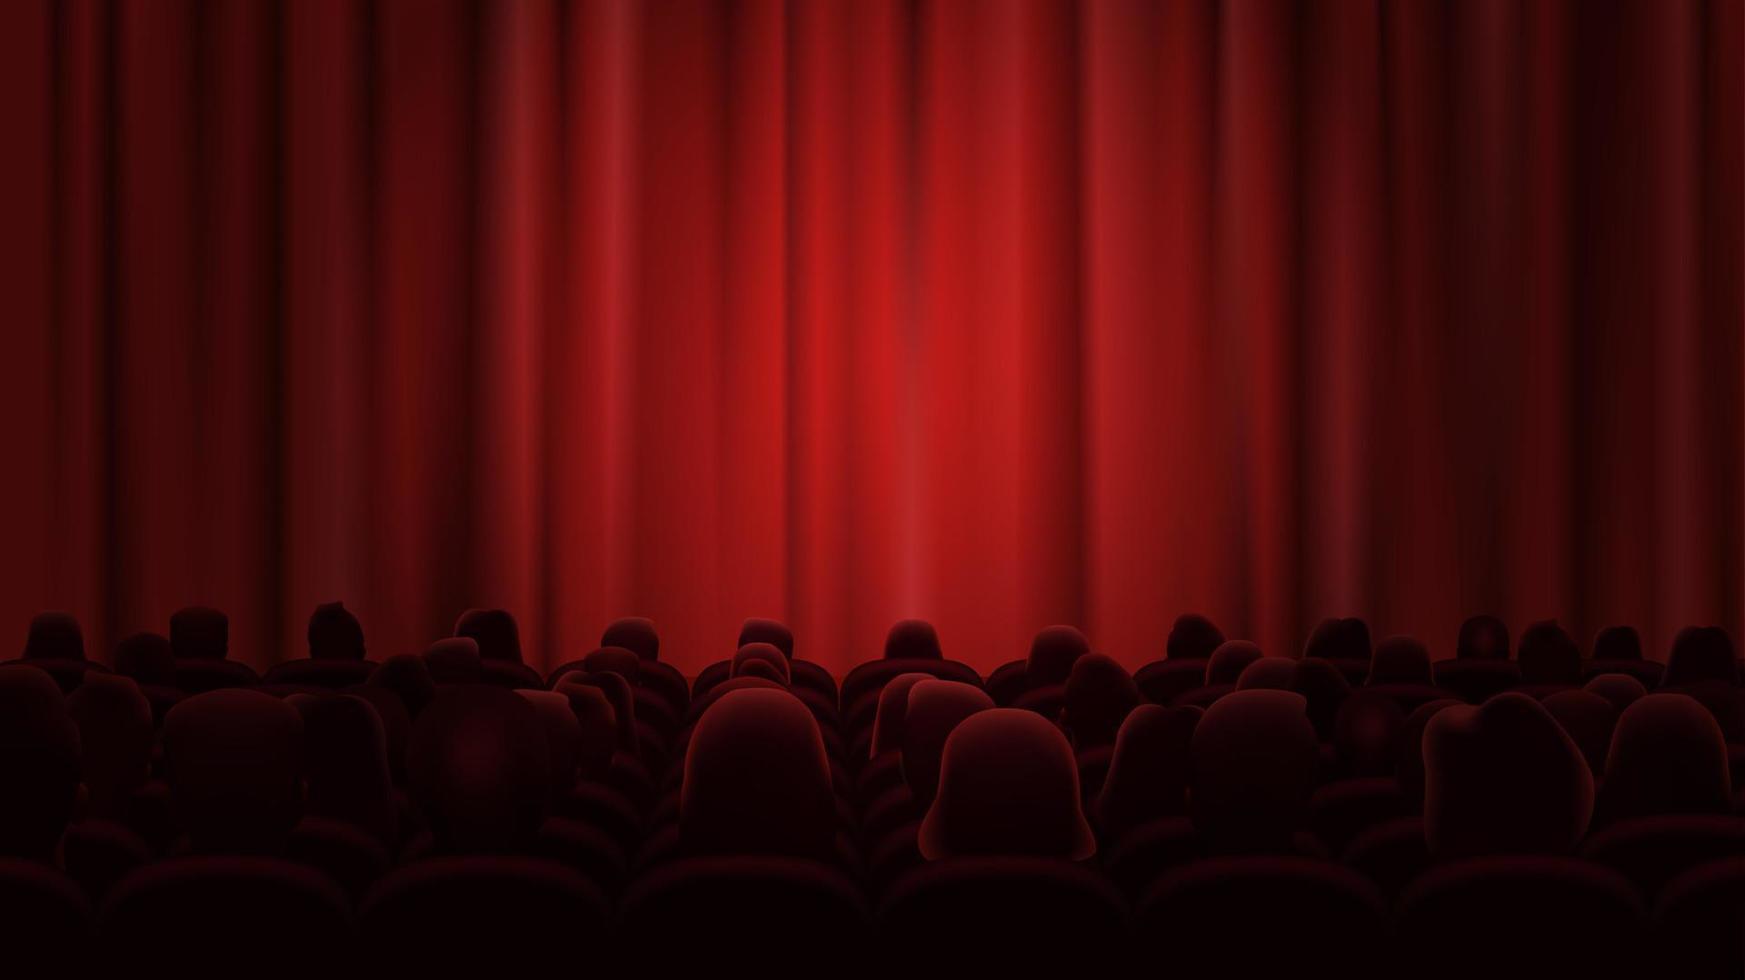 personas sentar en teatral sillas y Espere para el comienzo de el actuación. el etapa es cerrado por un rojo cortina, iluminado por un reflector. vector ilustración